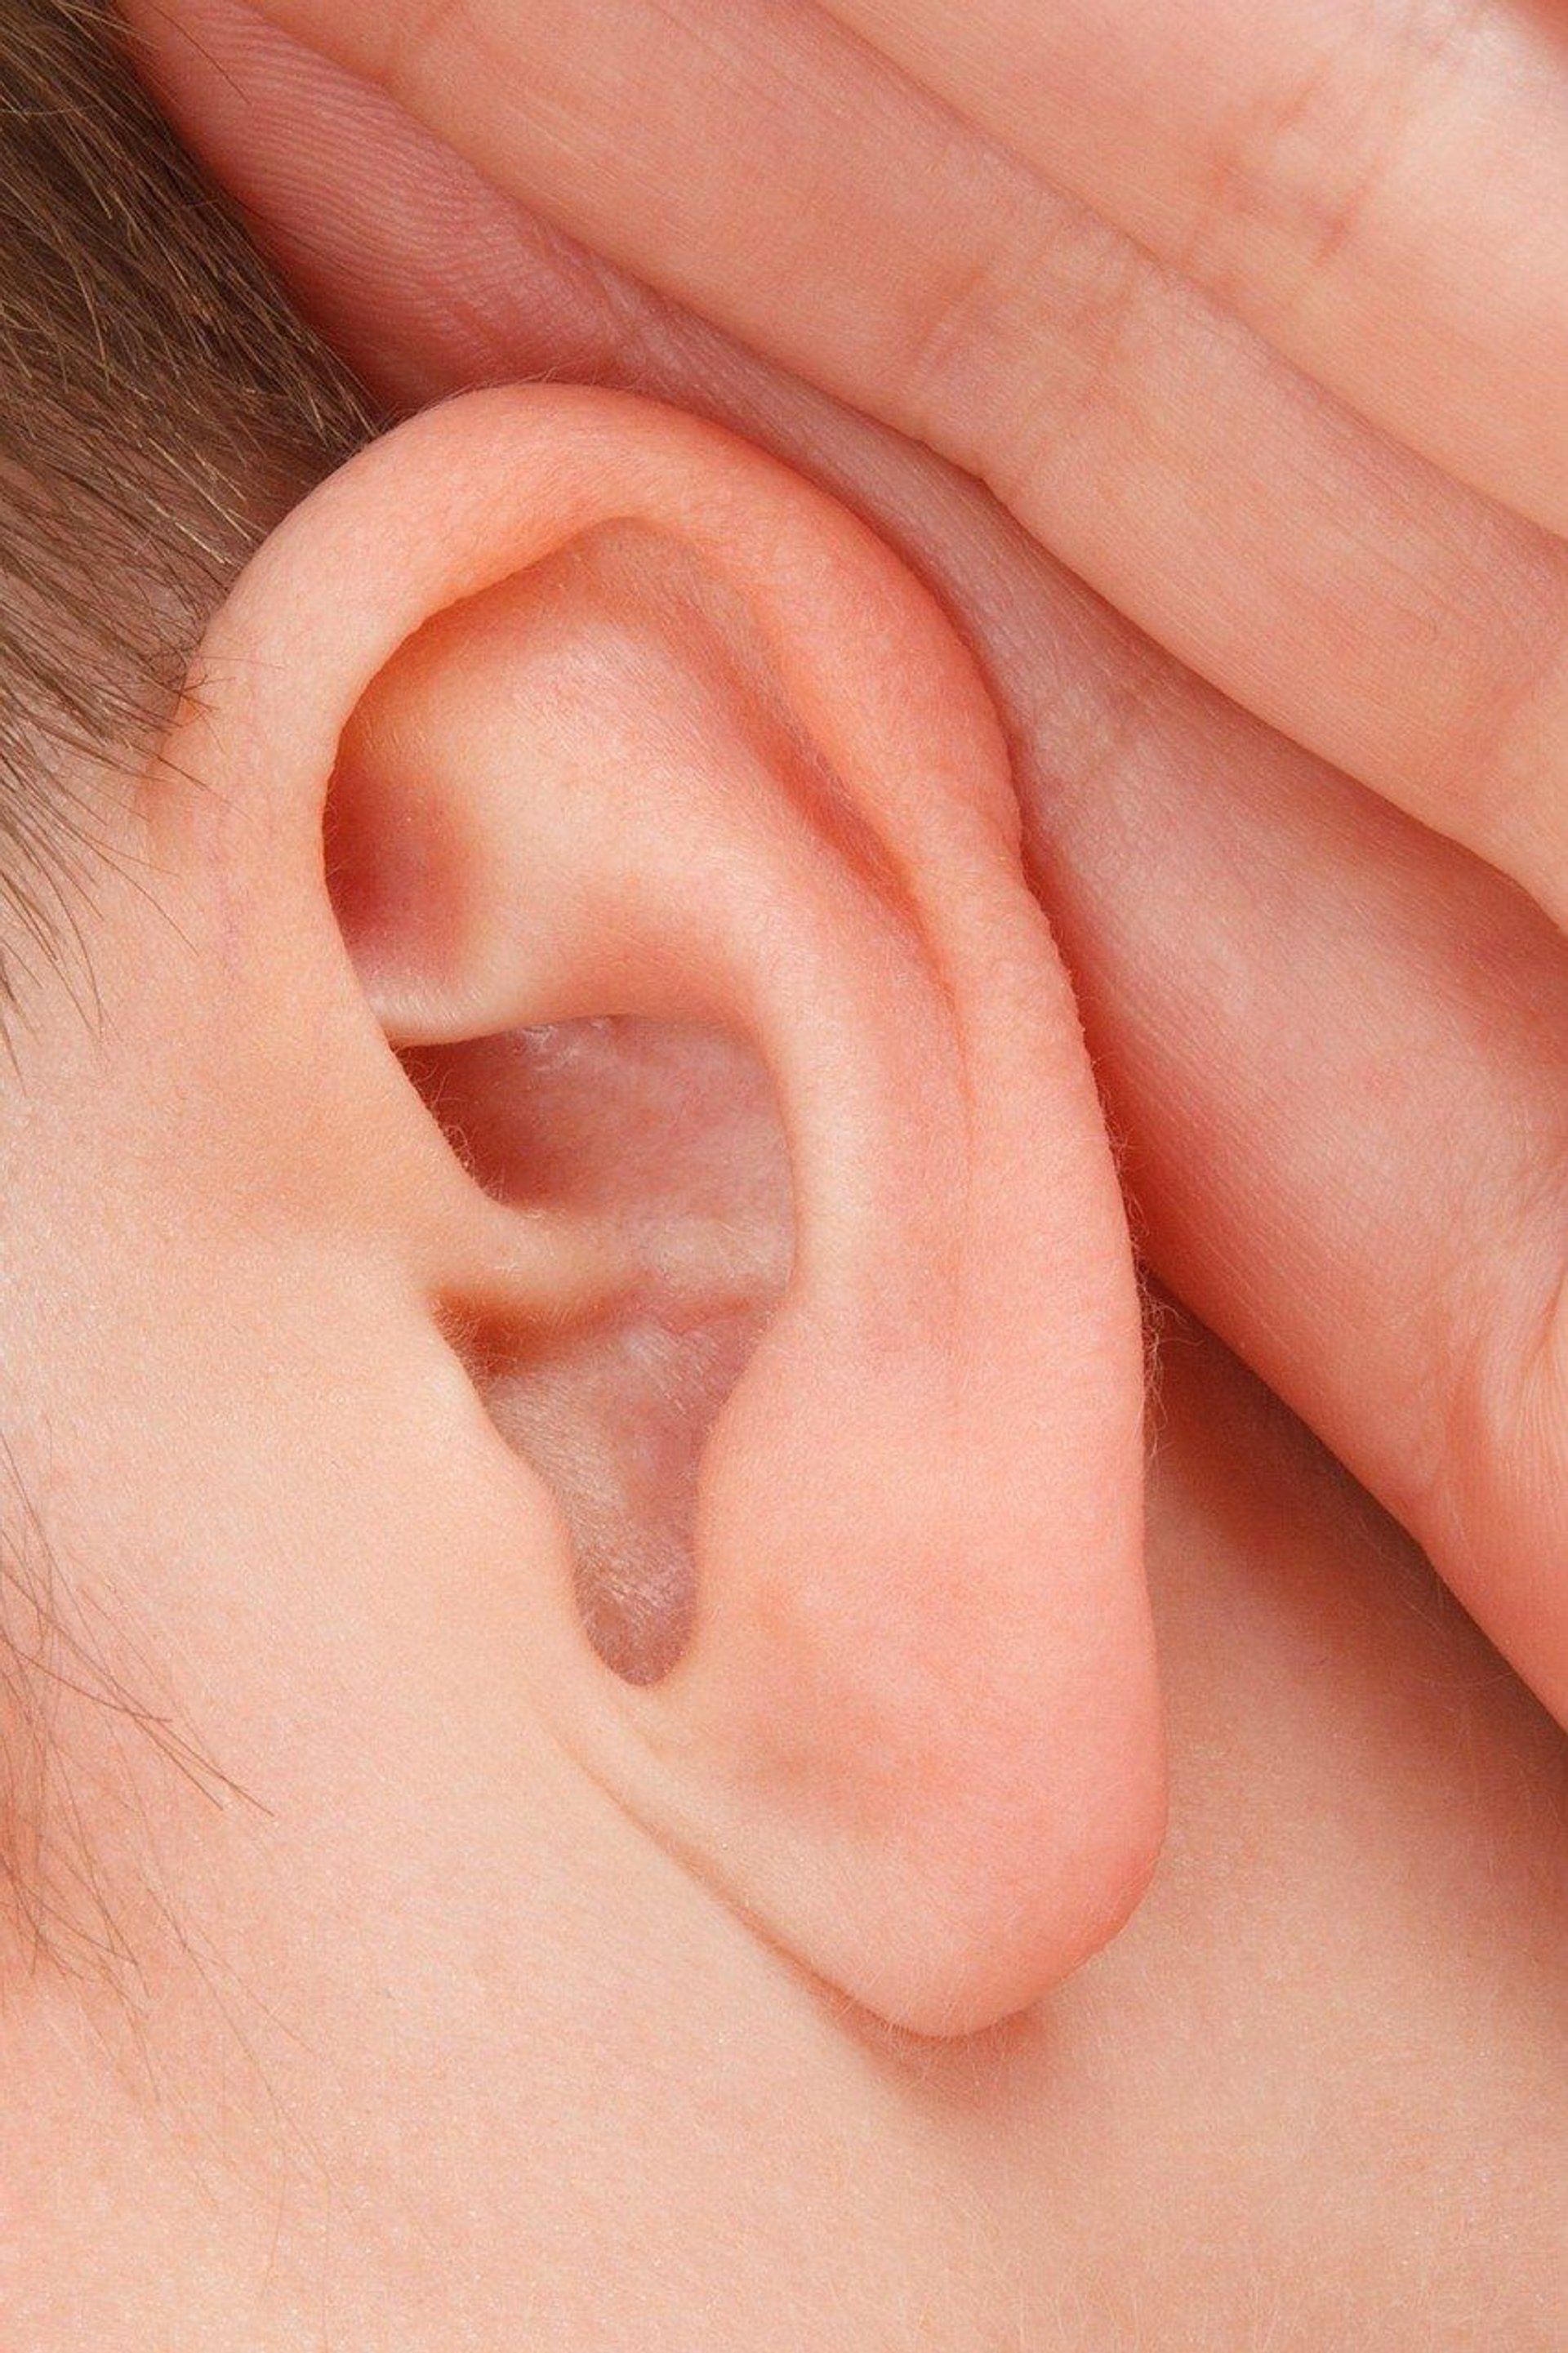 Grzybicze zapalenie ucha zewnętrznego – objawy i leczenie